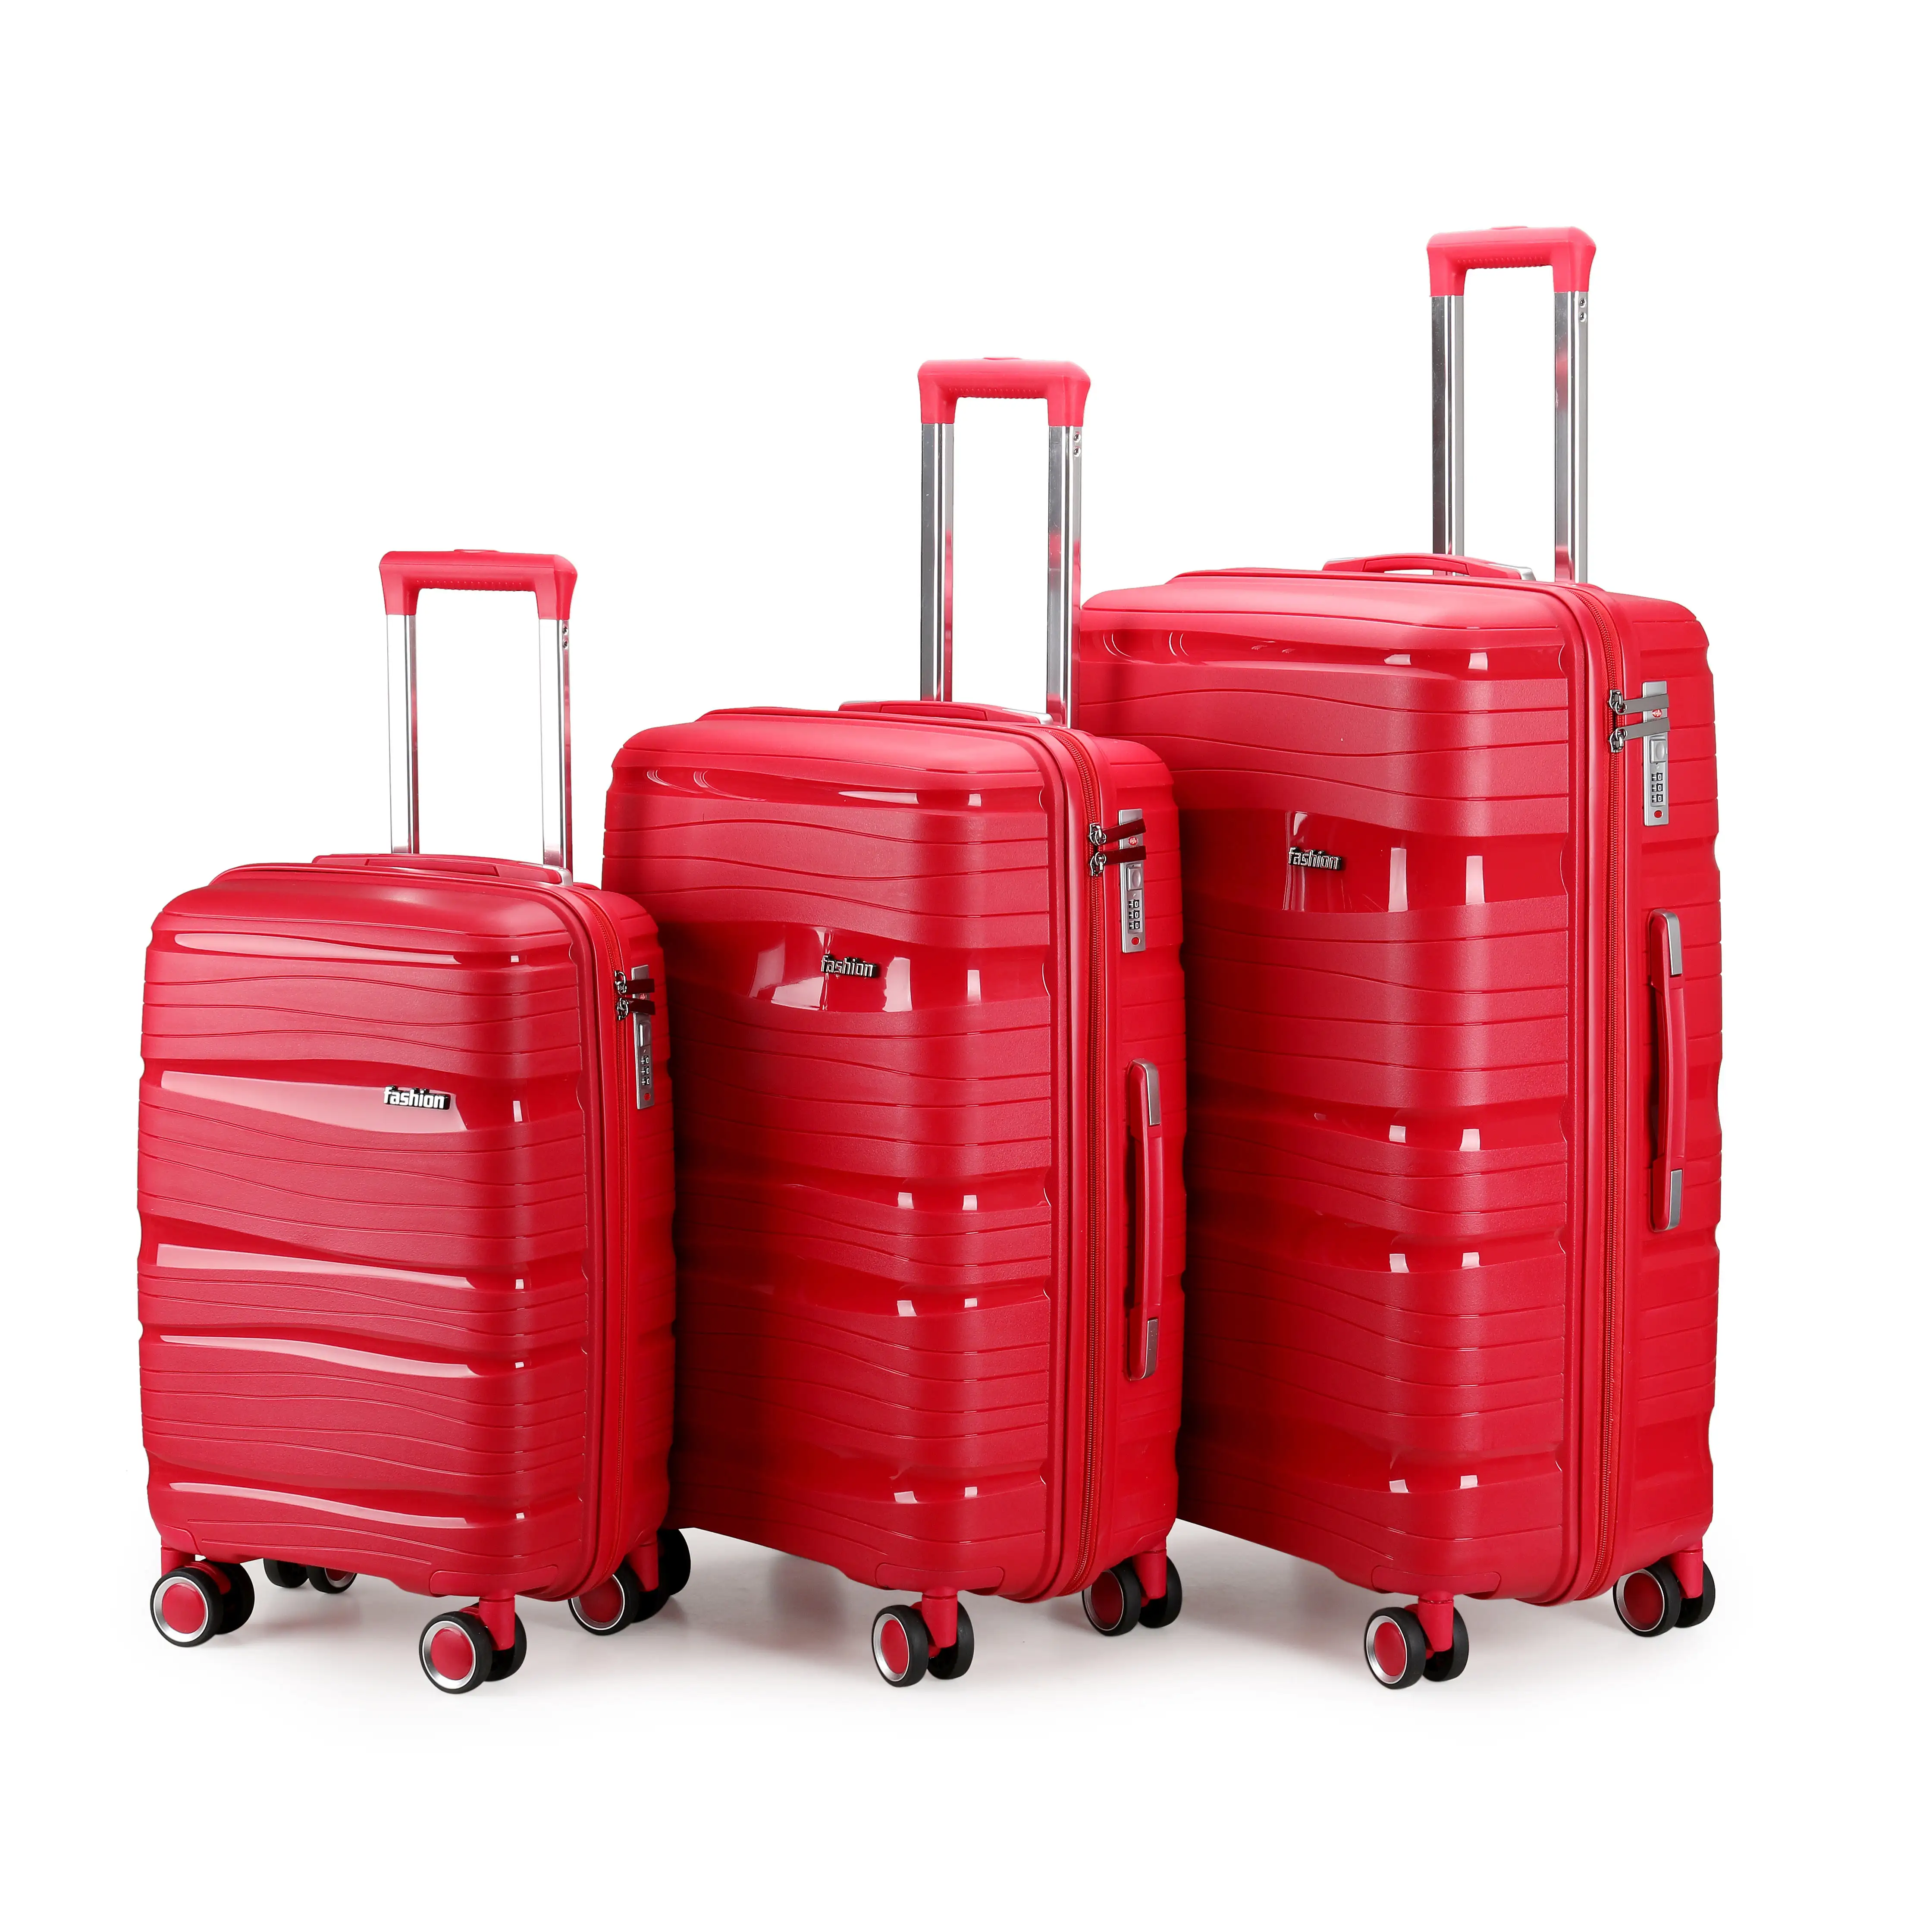 PP Tolley case nueva llegada bolsa pecho equipaje de alta calidad material duro vintage equipaje viaje bolsa de negocios